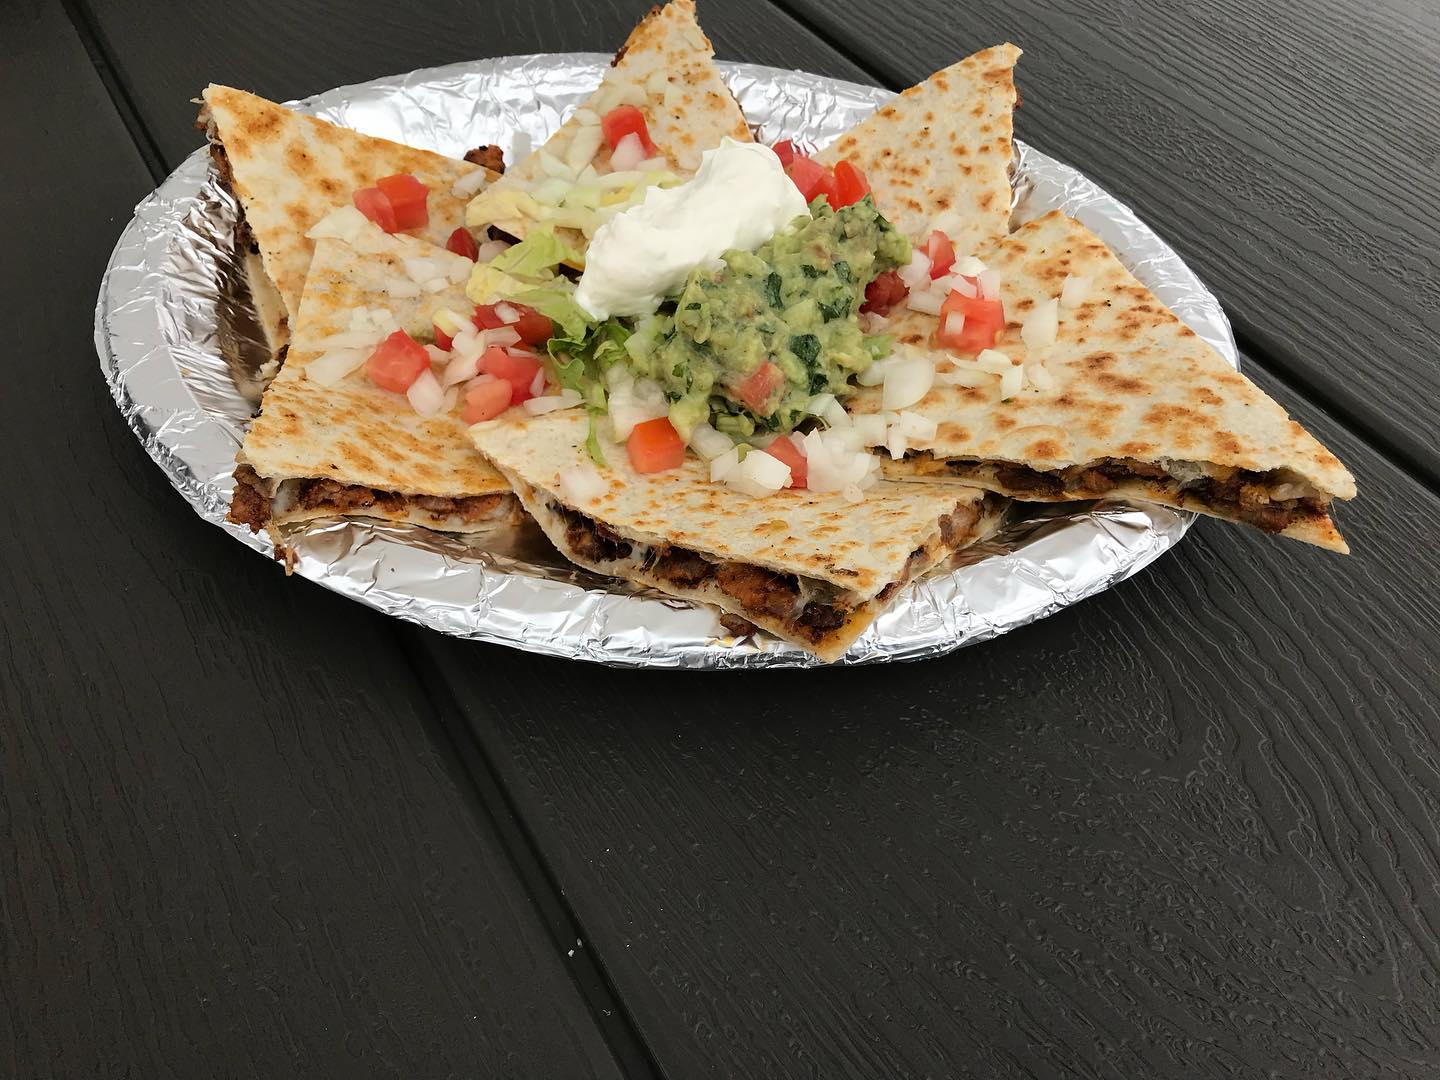 Tacos La Rana